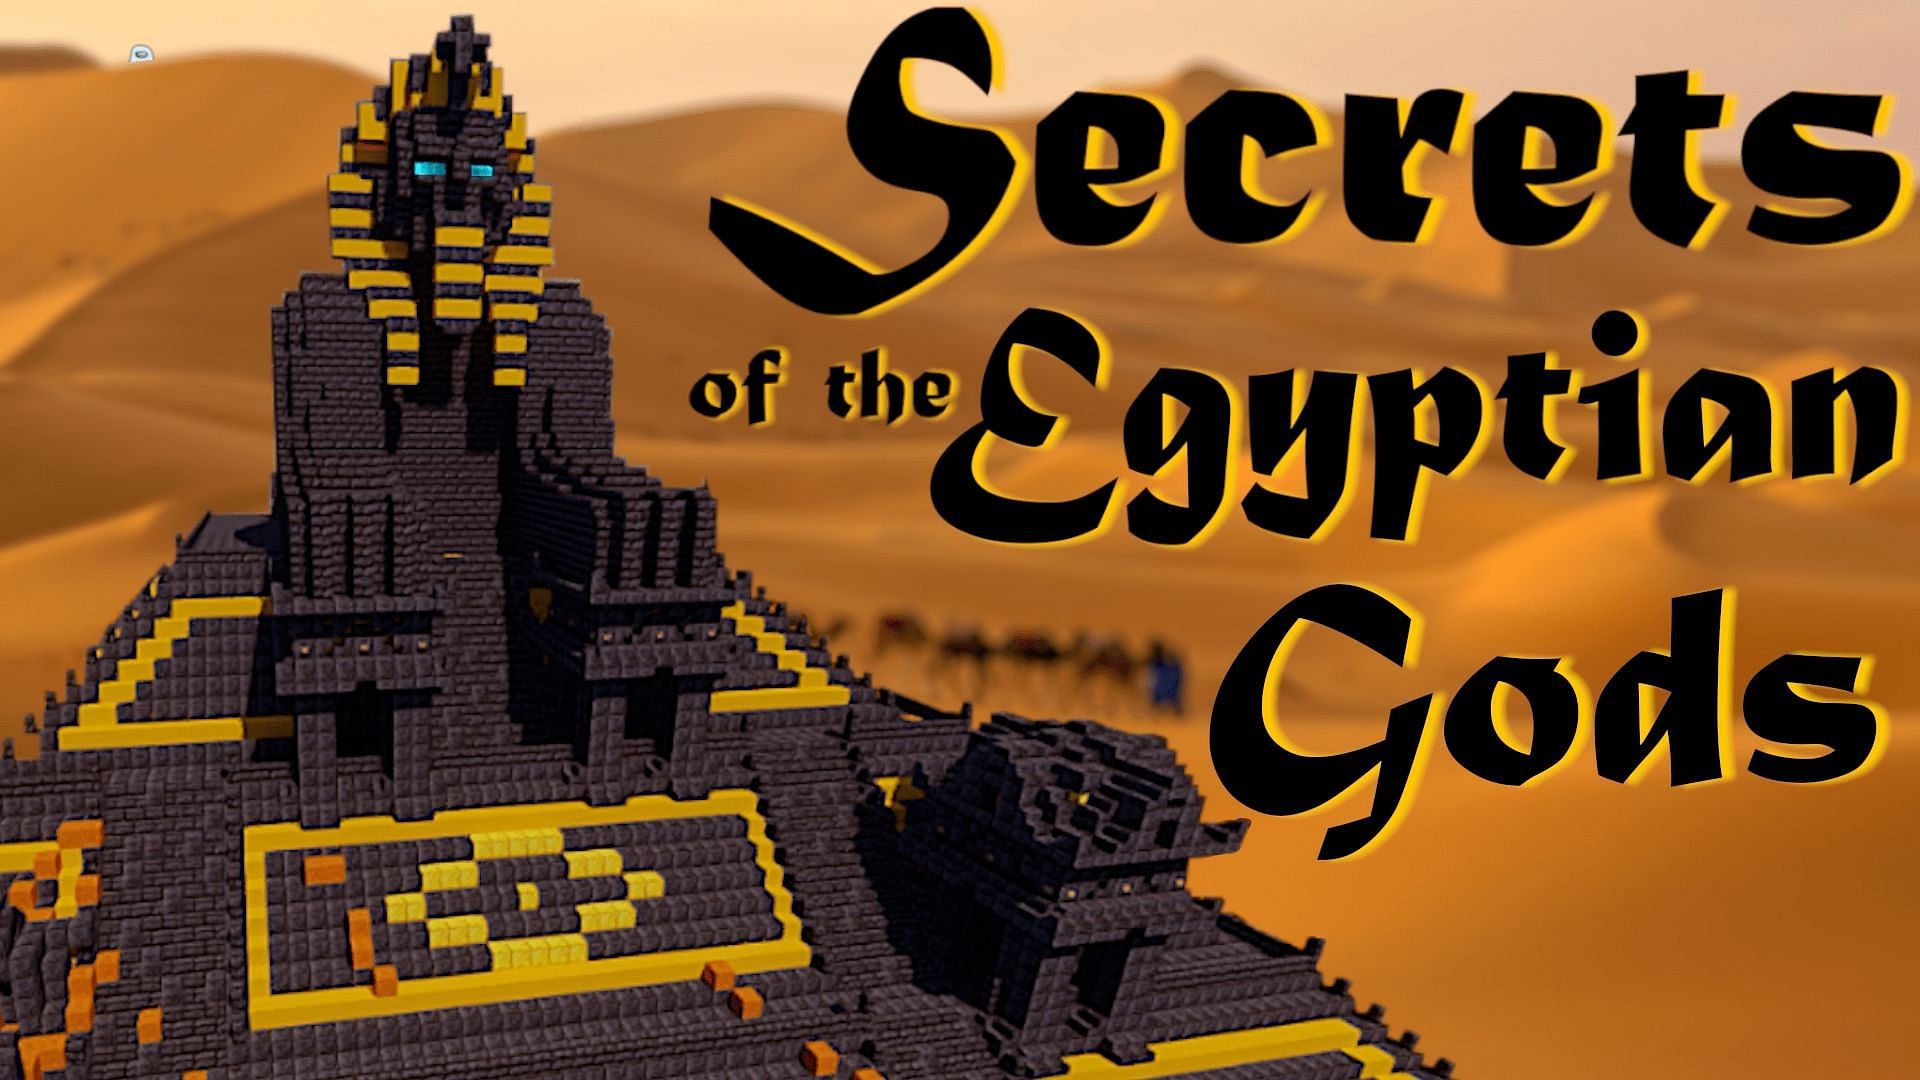 The Secrets of the Egyptian Gods map (Image via minecraftmaps.com)